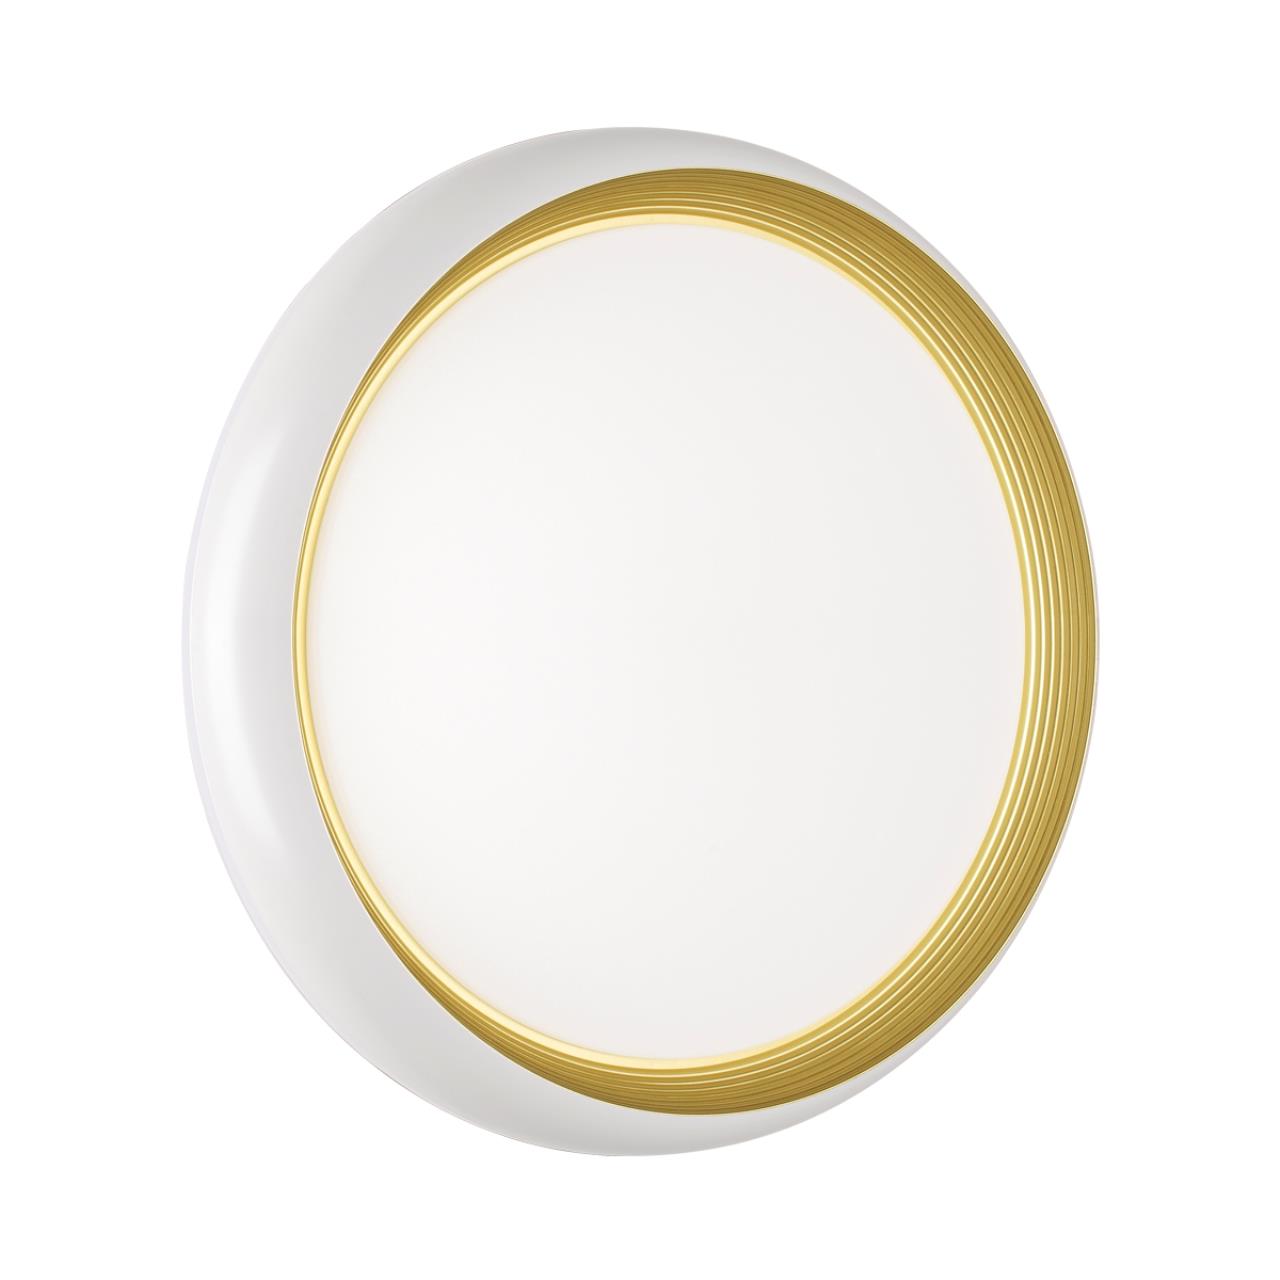 Cветильник 38*8,7 см, LED 48W, 4000 К, IP43, белый/золотой, пластик Sonex Tofiq White, 7650/DL